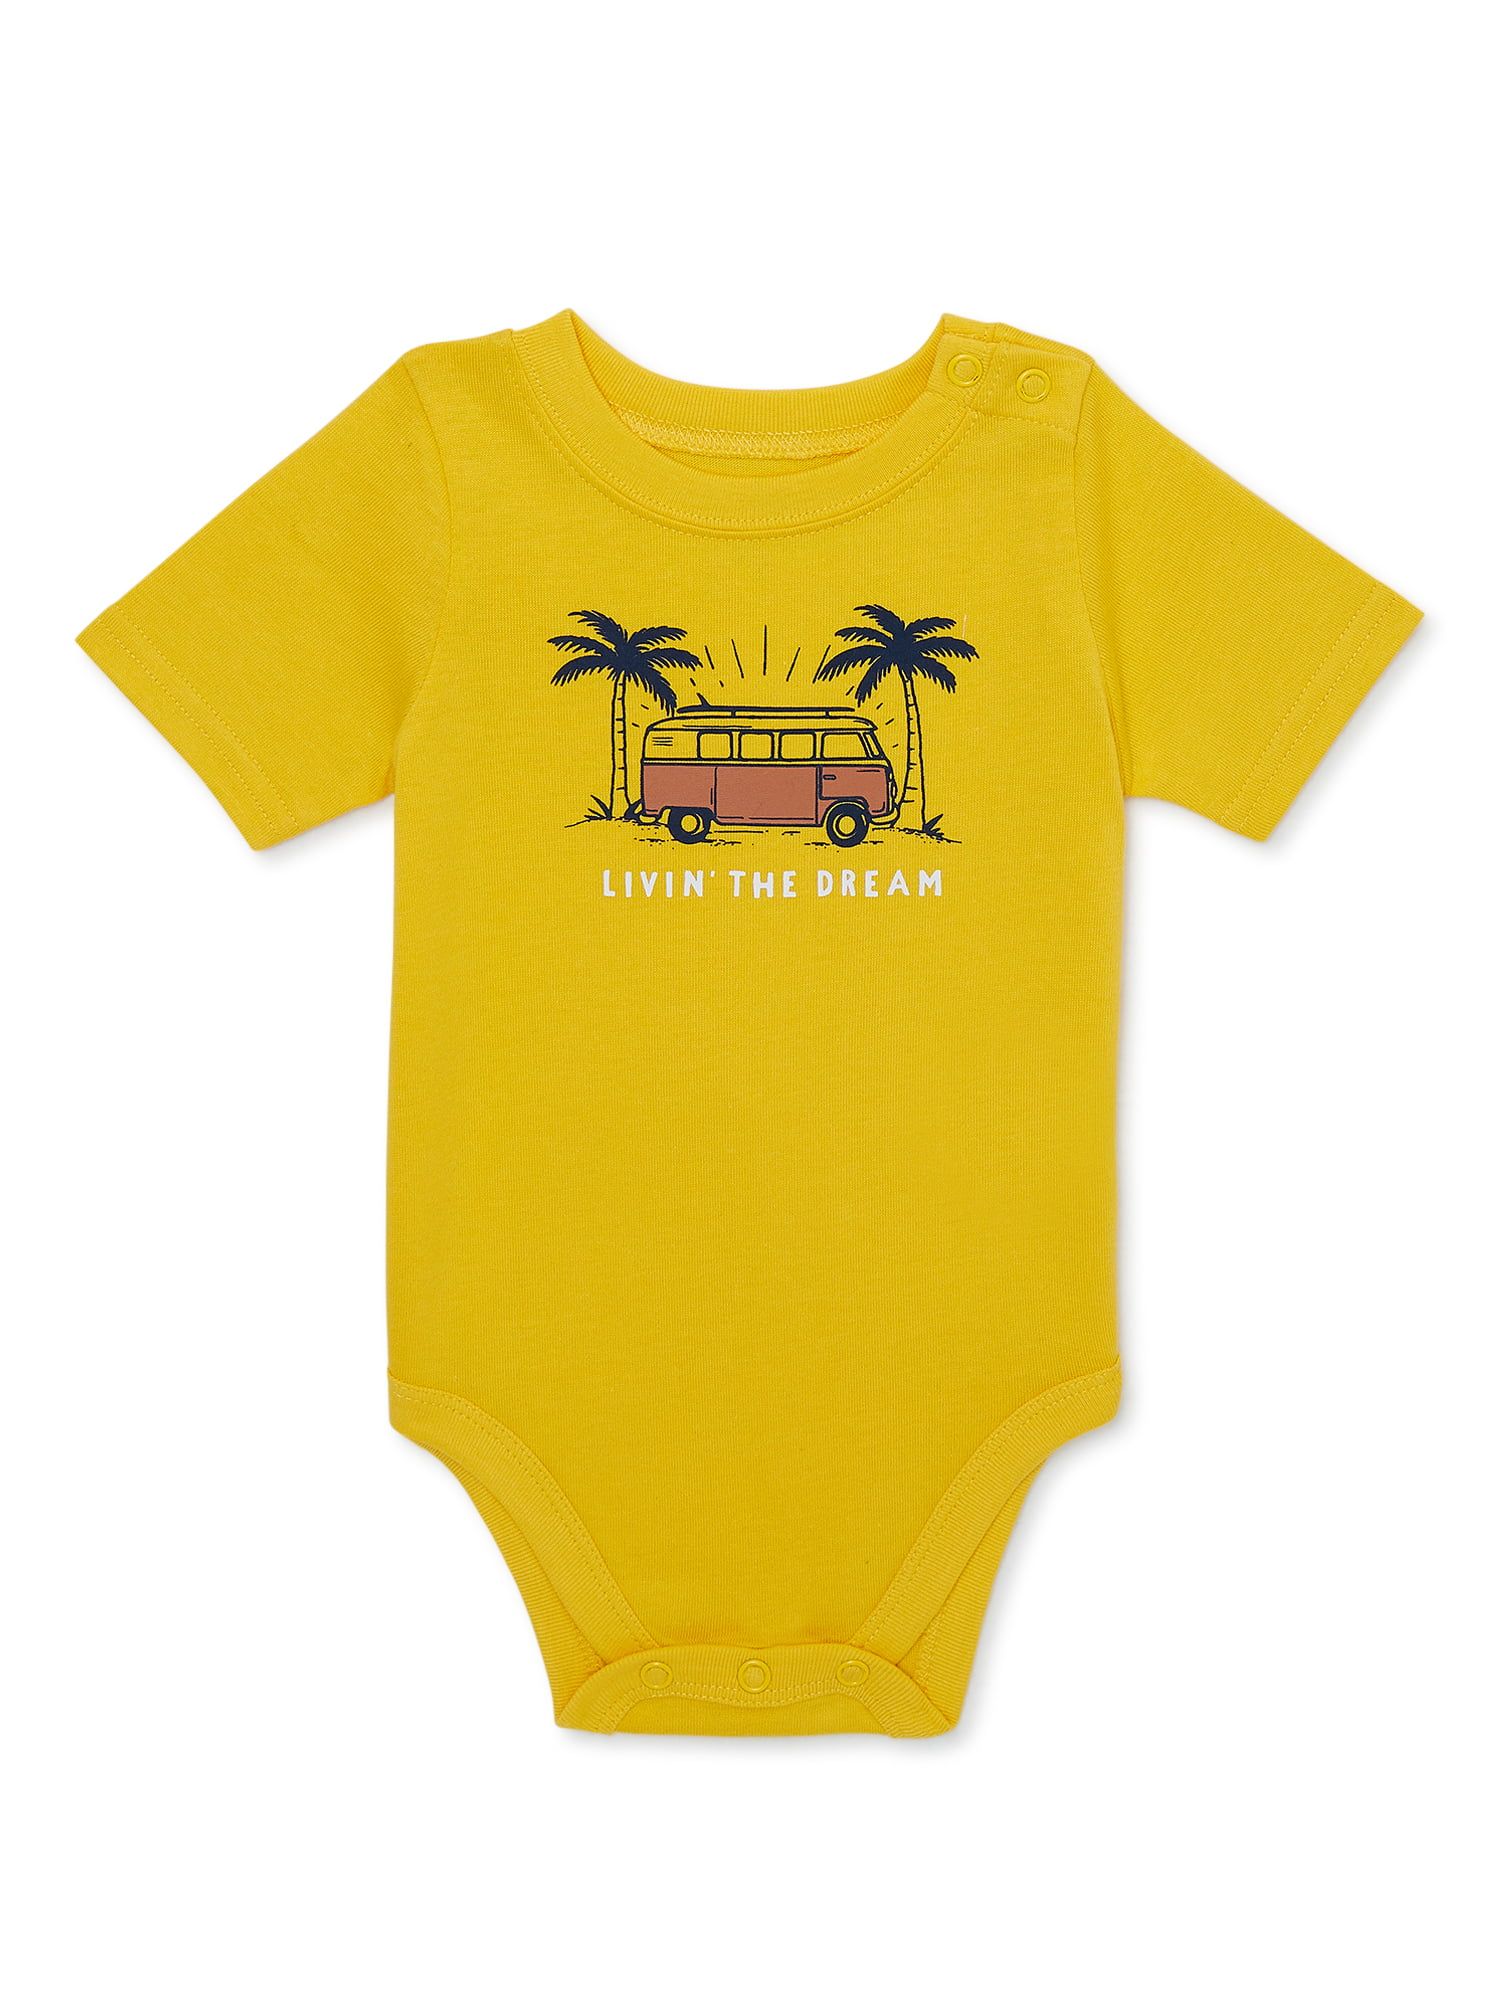 Garanimals Baby Boy Short Sleeve Graphic Bodysuit, Sizes 0-24 Months | Walmart (US)